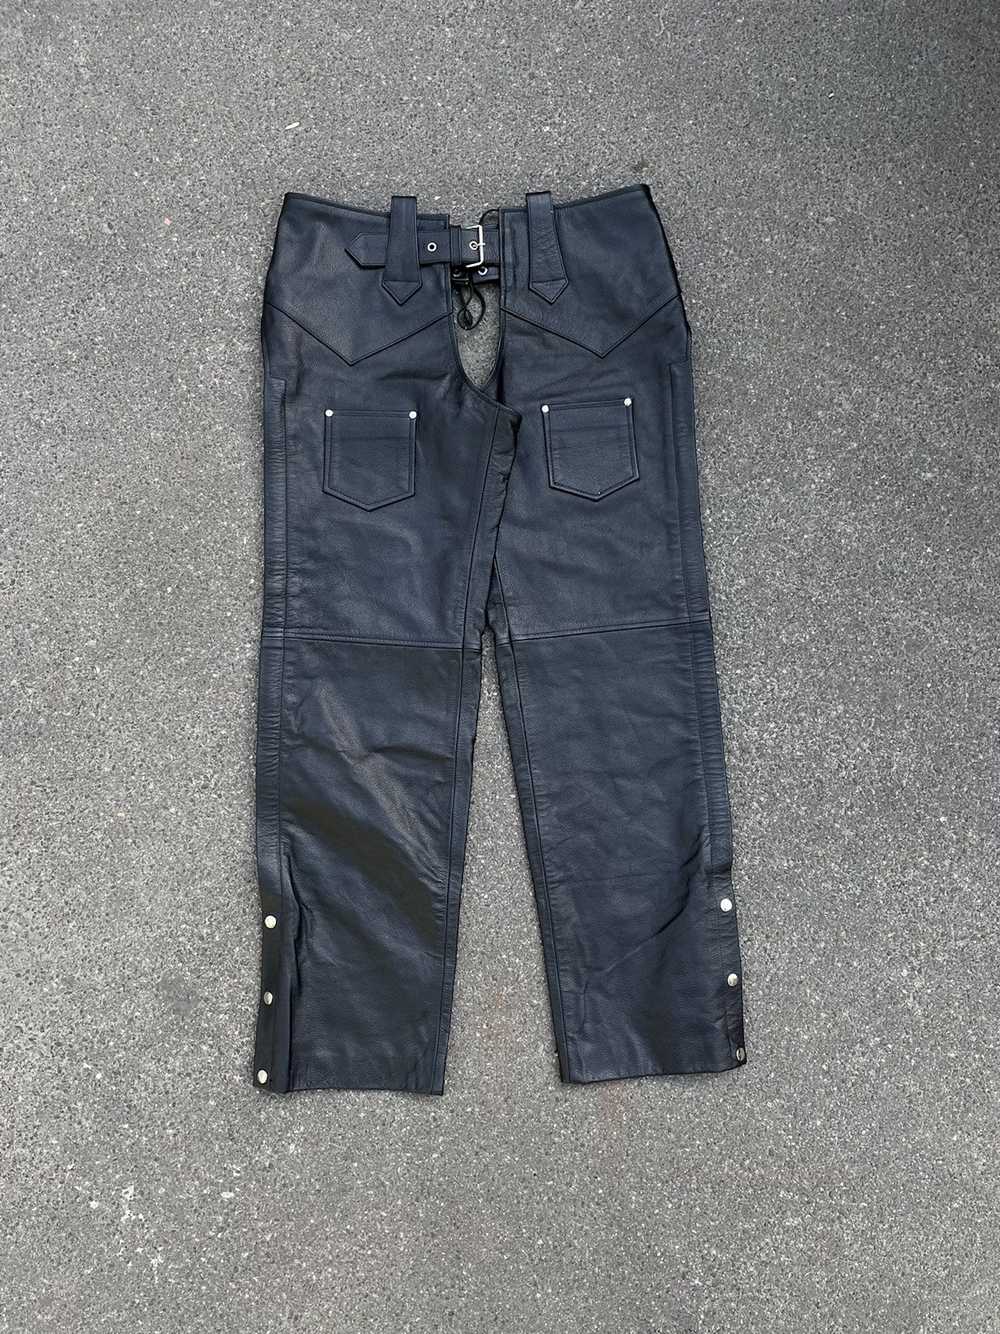 Biker Jeans × Genuine Leather × Vintage Vintage G… - image 3